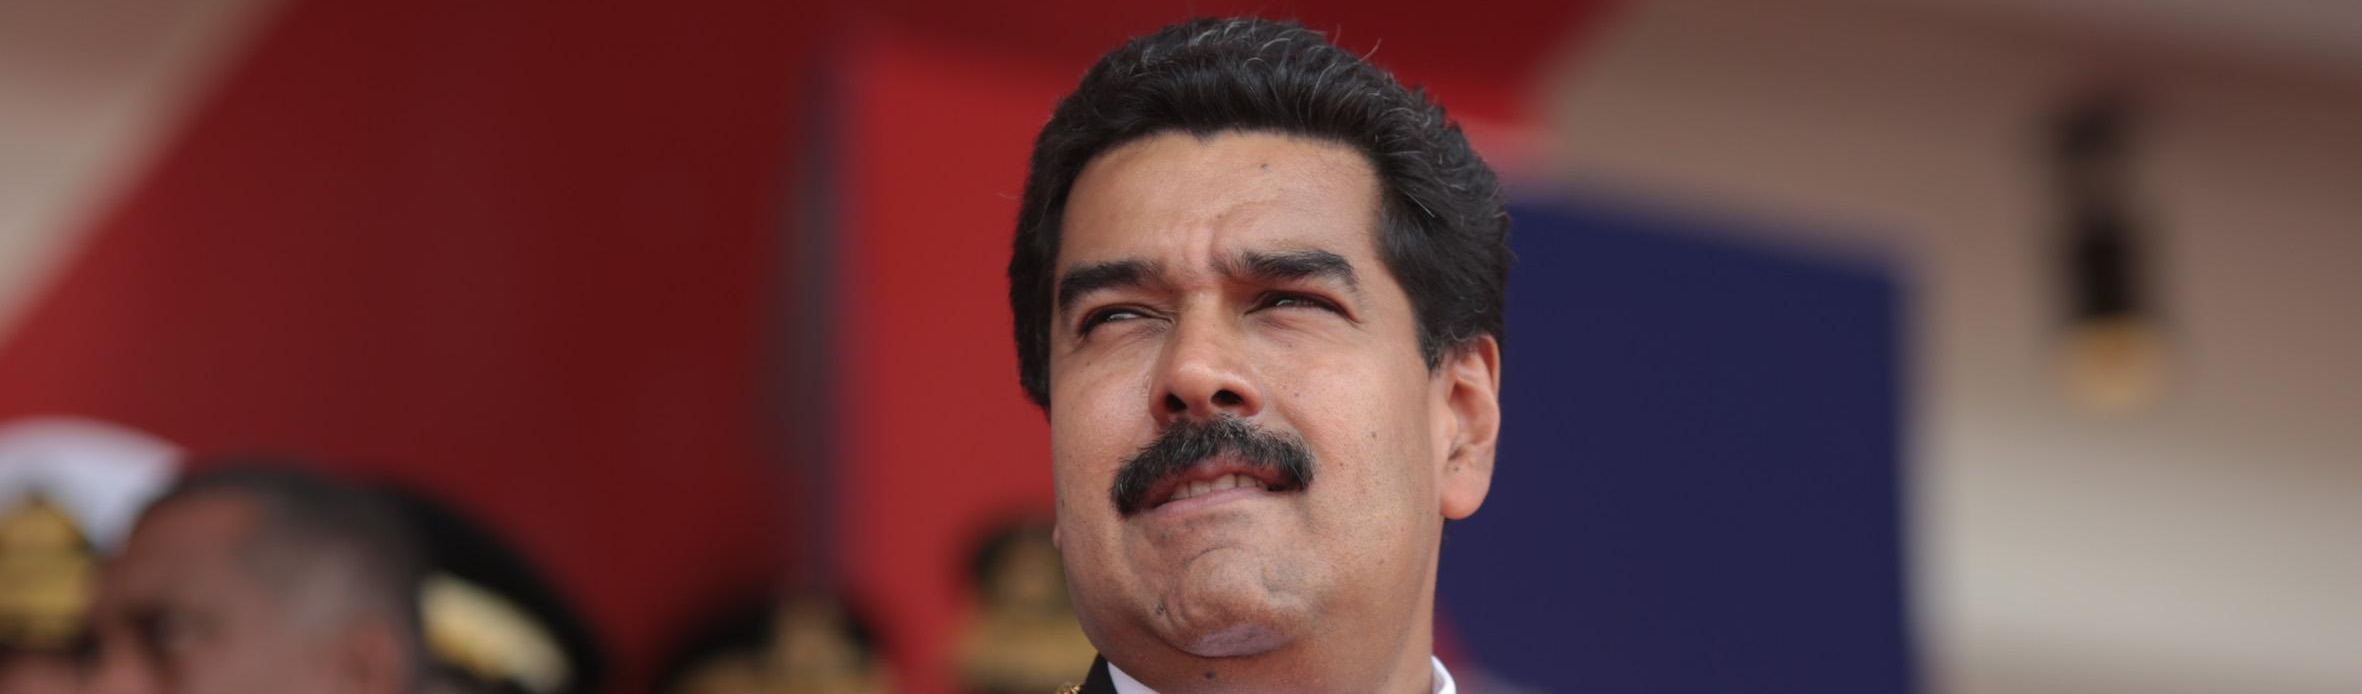 Governo da Venezuela pagará salários de trabalhadores públicos e privados por 6 meses